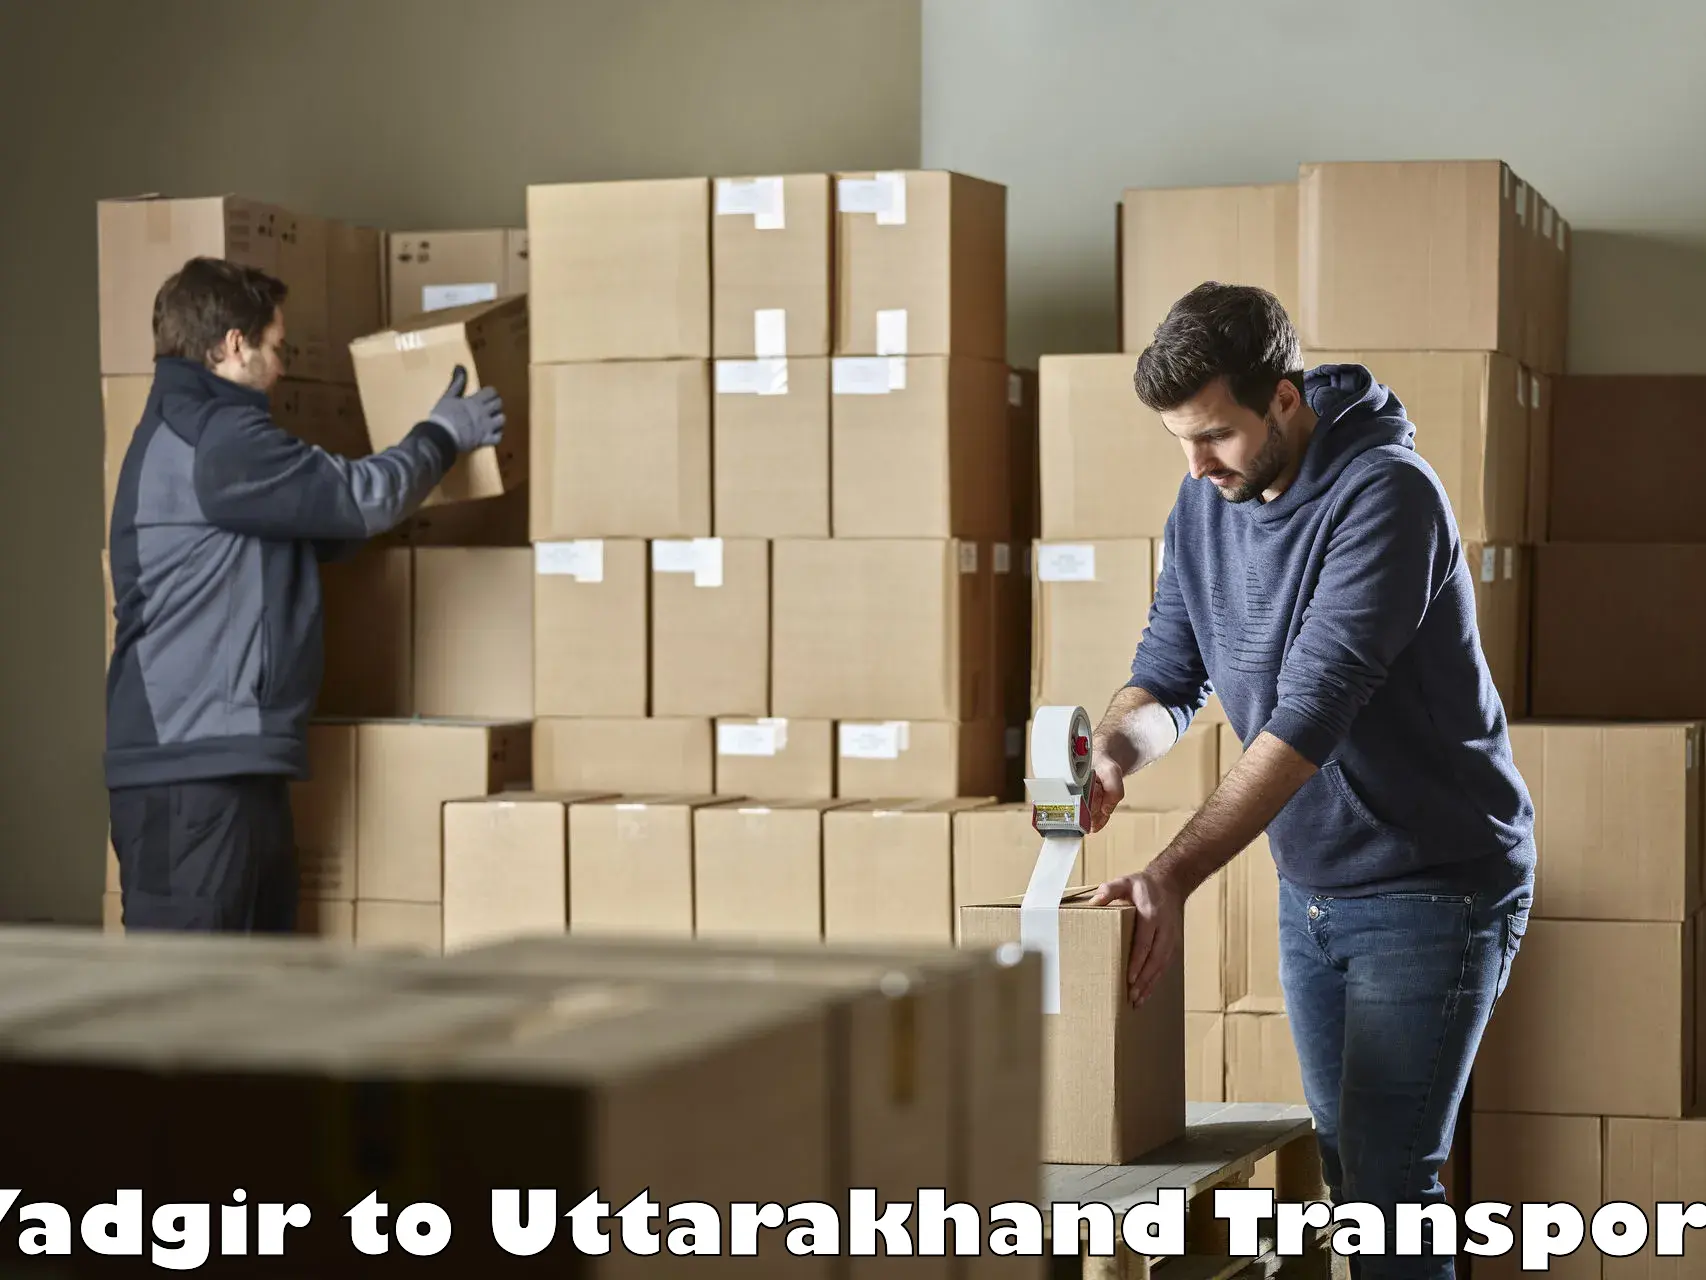 Commercial transport service Yadgir to Uttarakhand